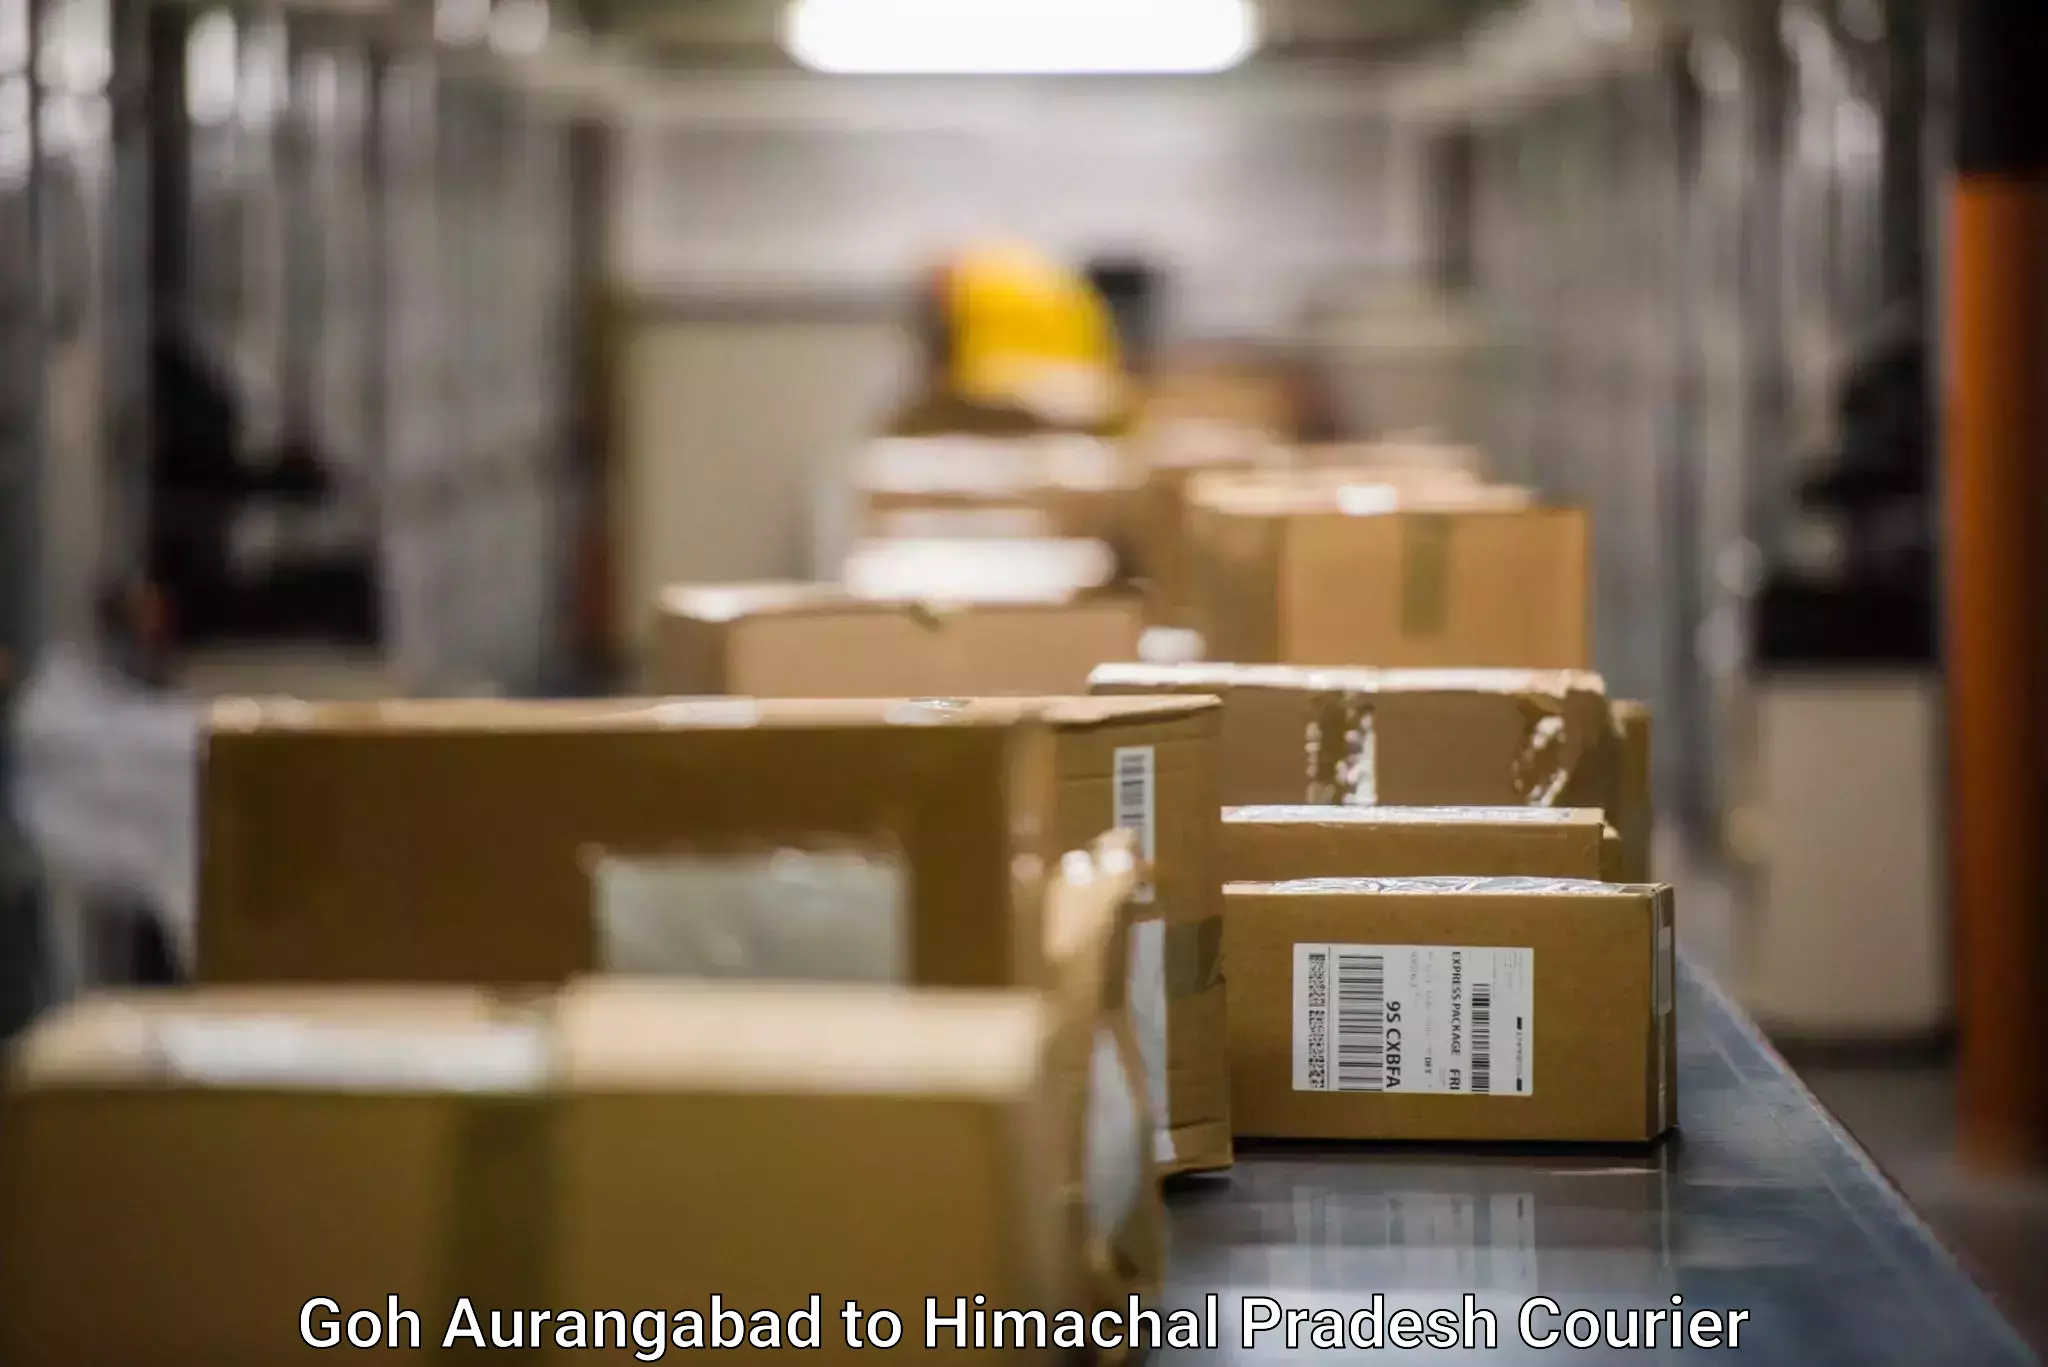 Automated parcel services Goh Aurangabad to NIT Hamirpur